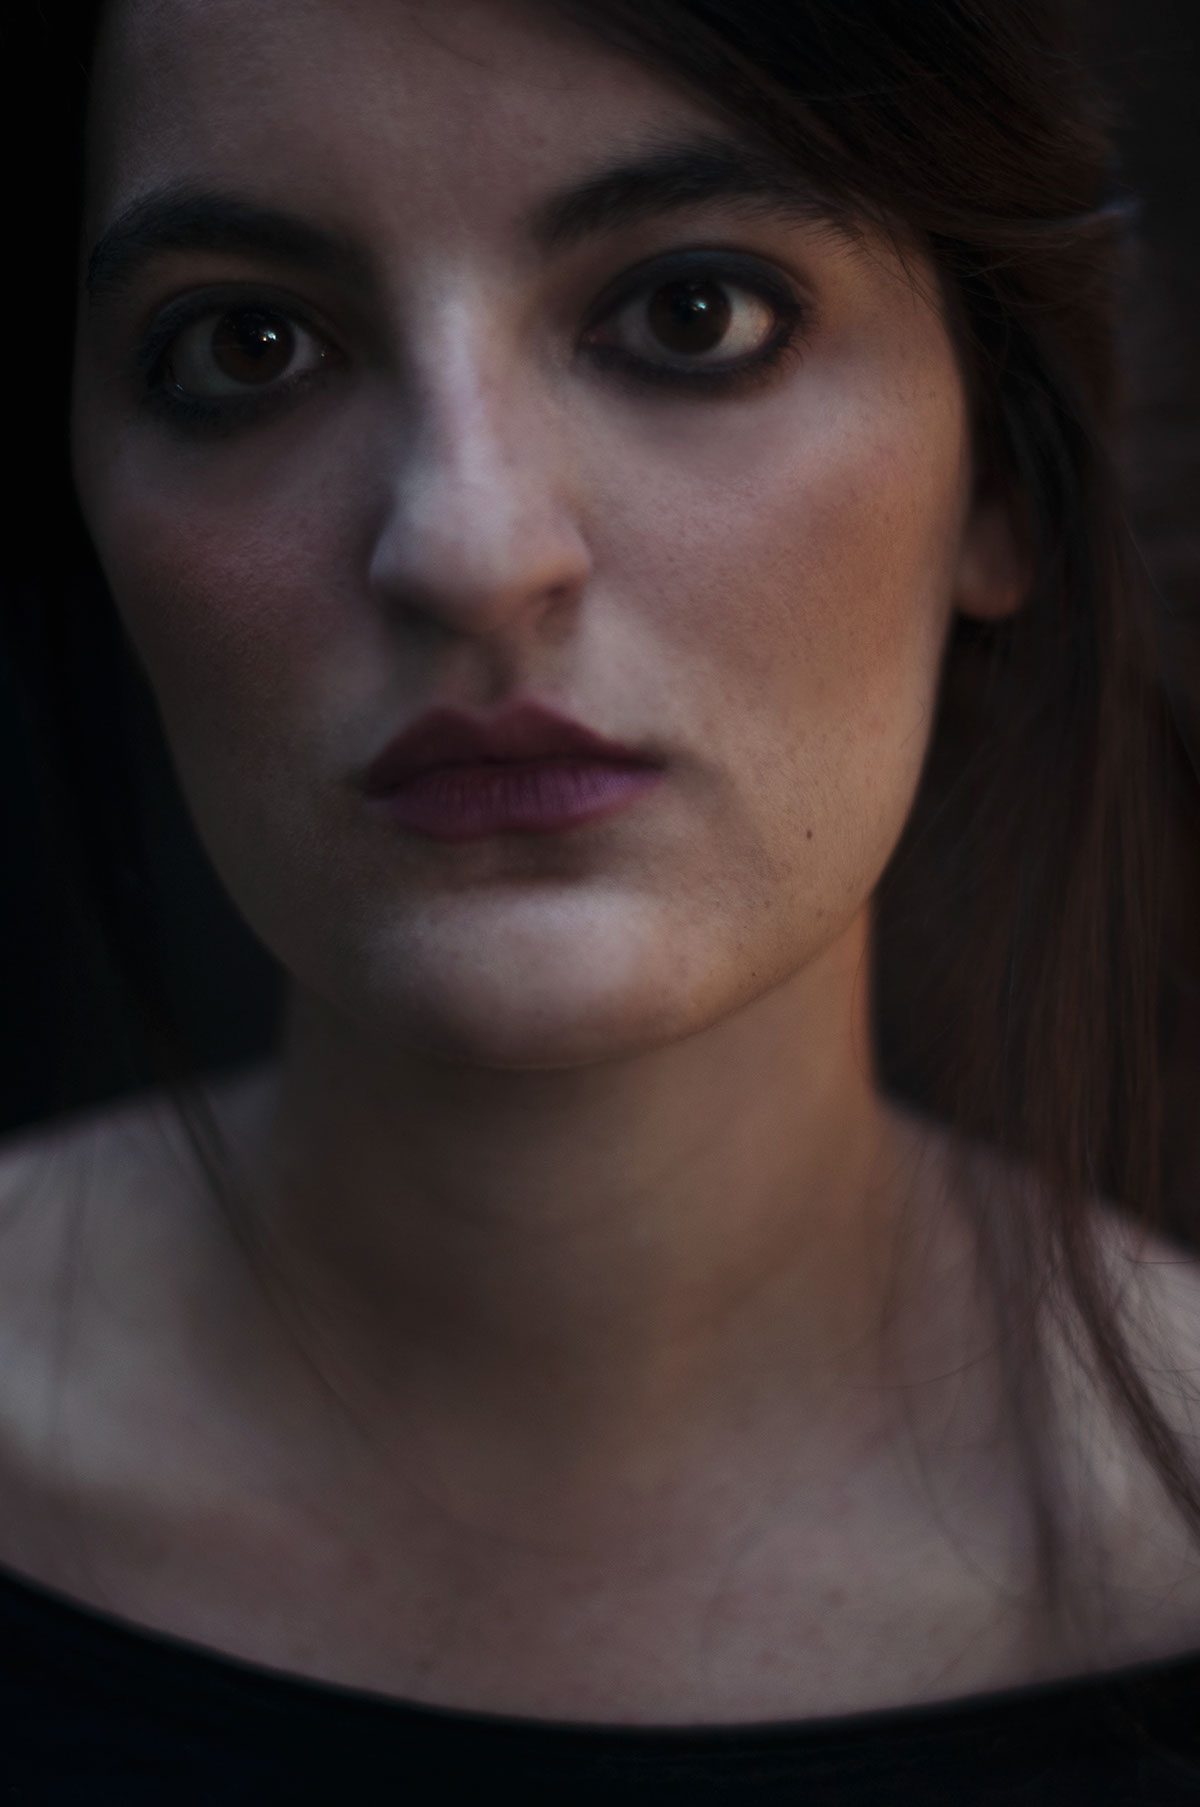 portrait Portraiture model Melancholy dark face eyes sofia hassan woman beauty